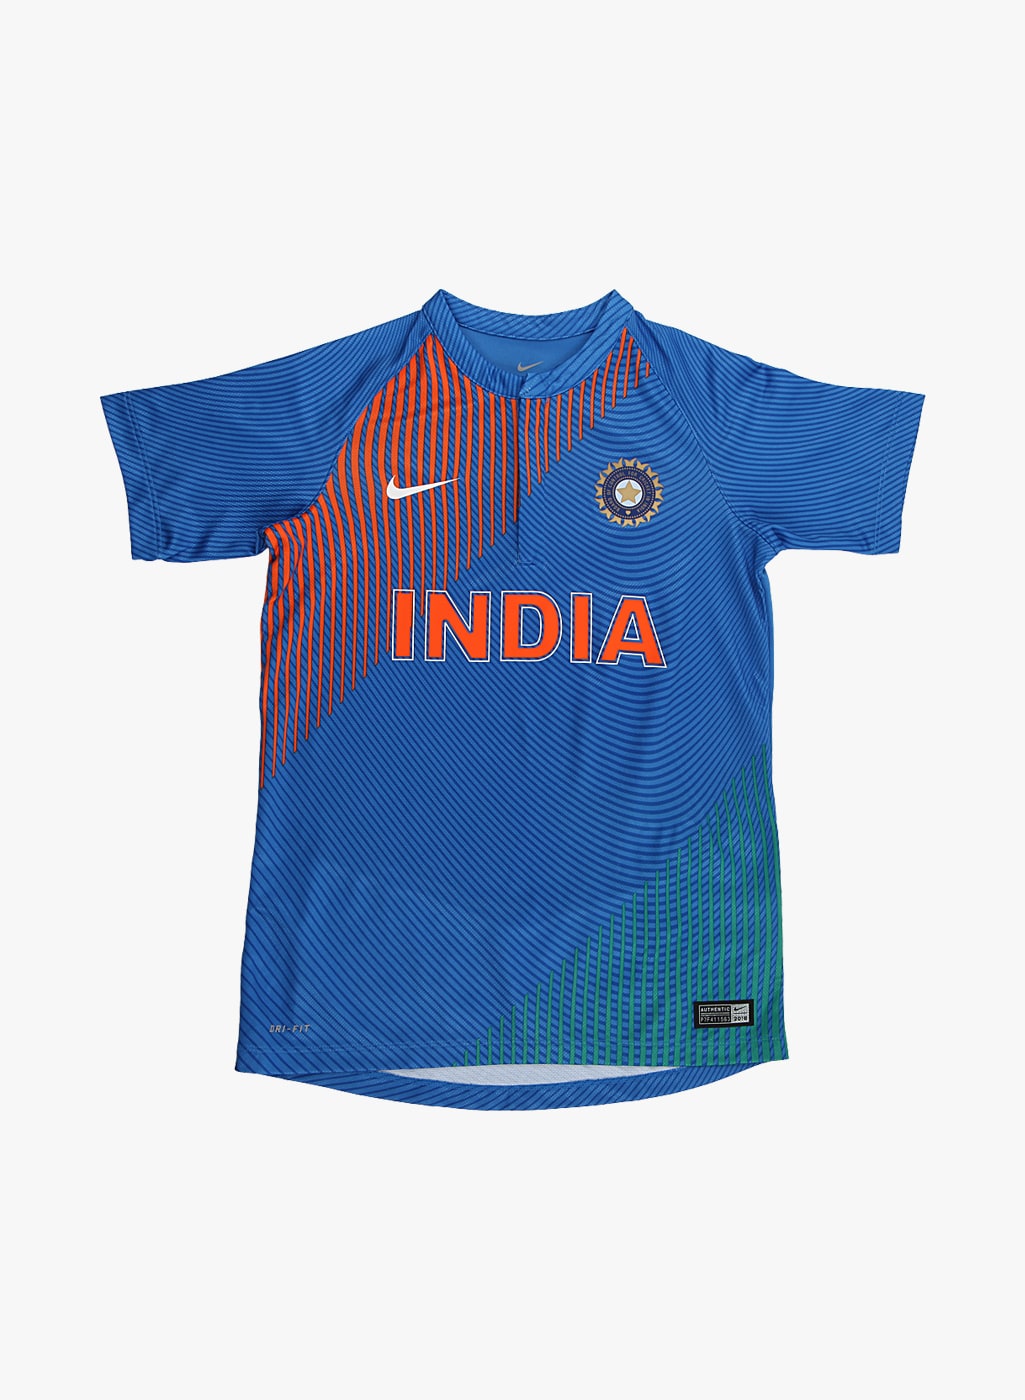 india cricket shirt nike